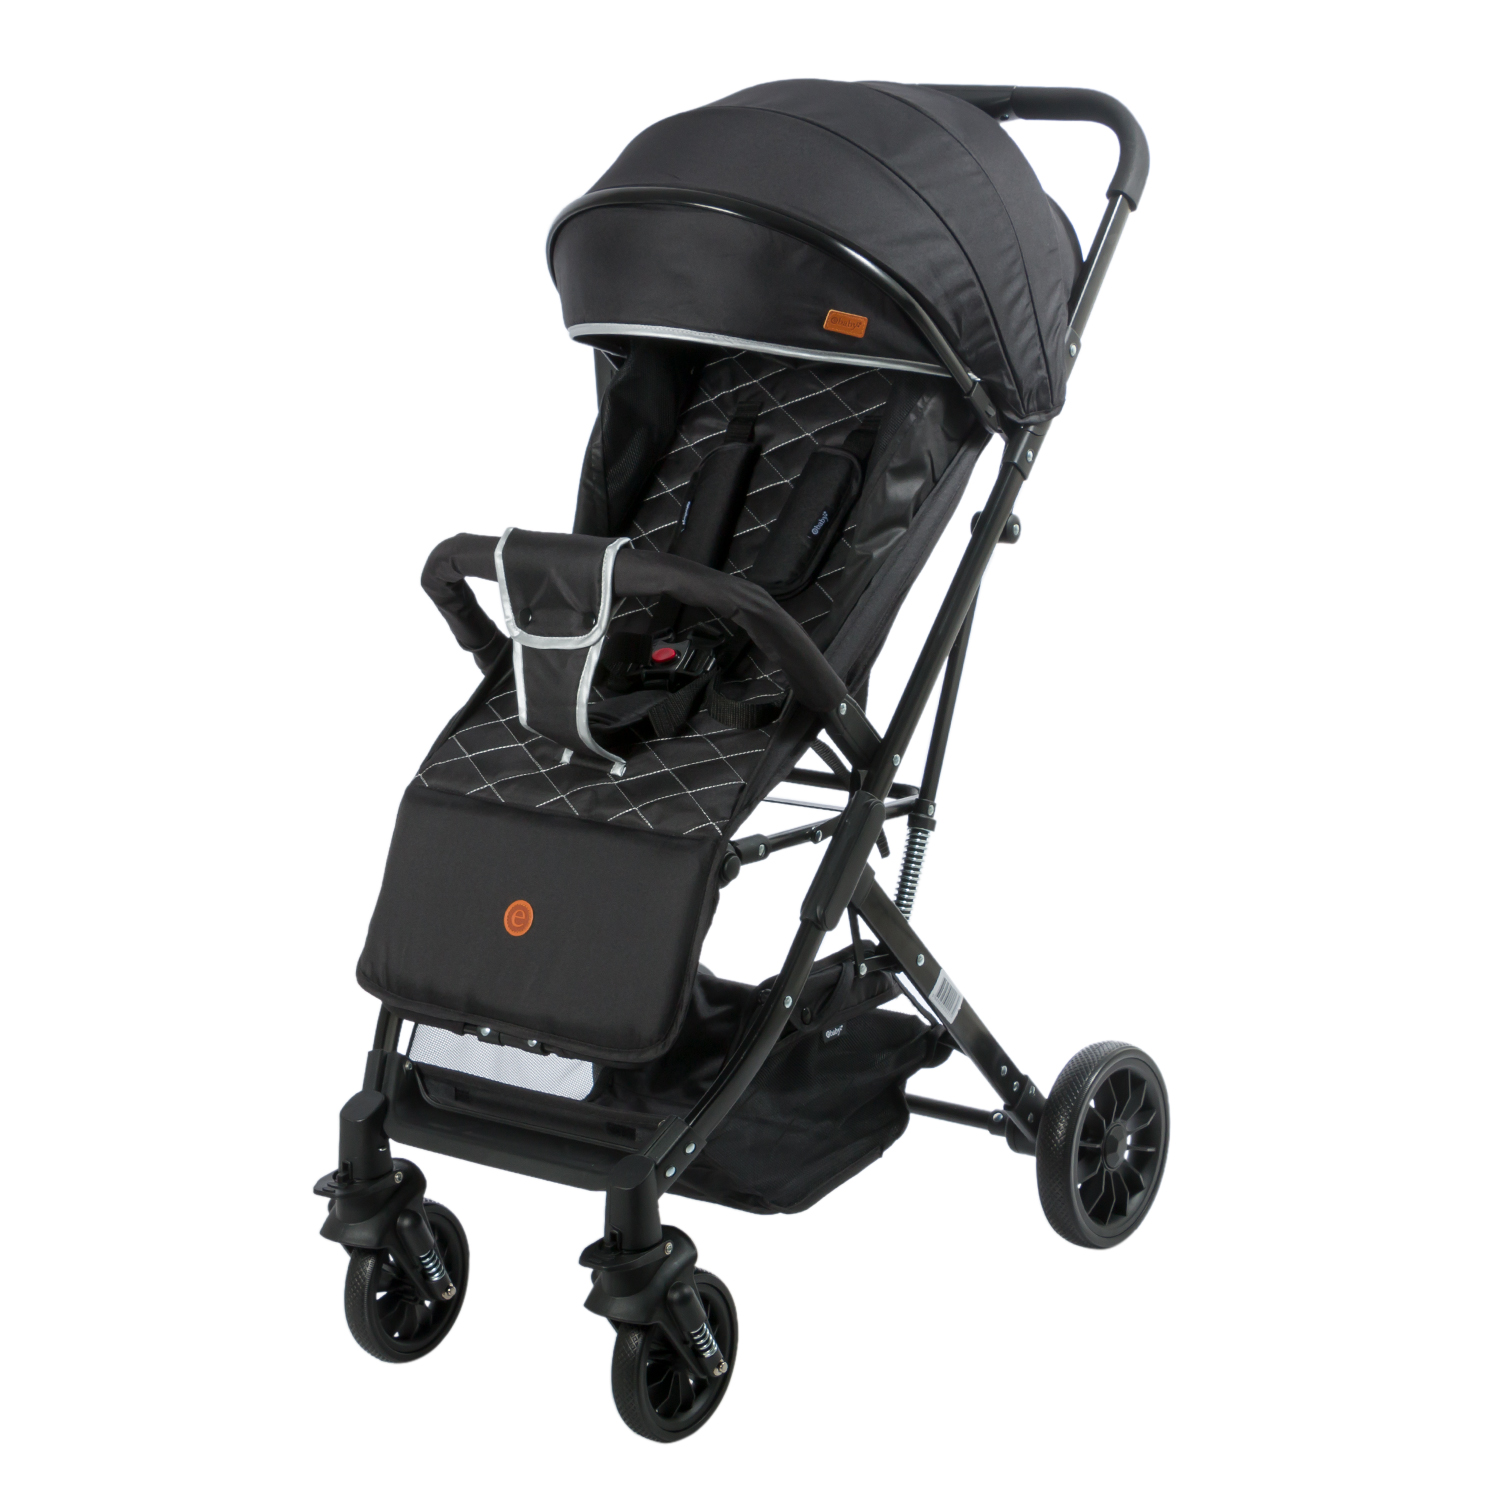 Porta bebe con funcion silla de auto TERRY - EB512-1 - Ebaby Colombia